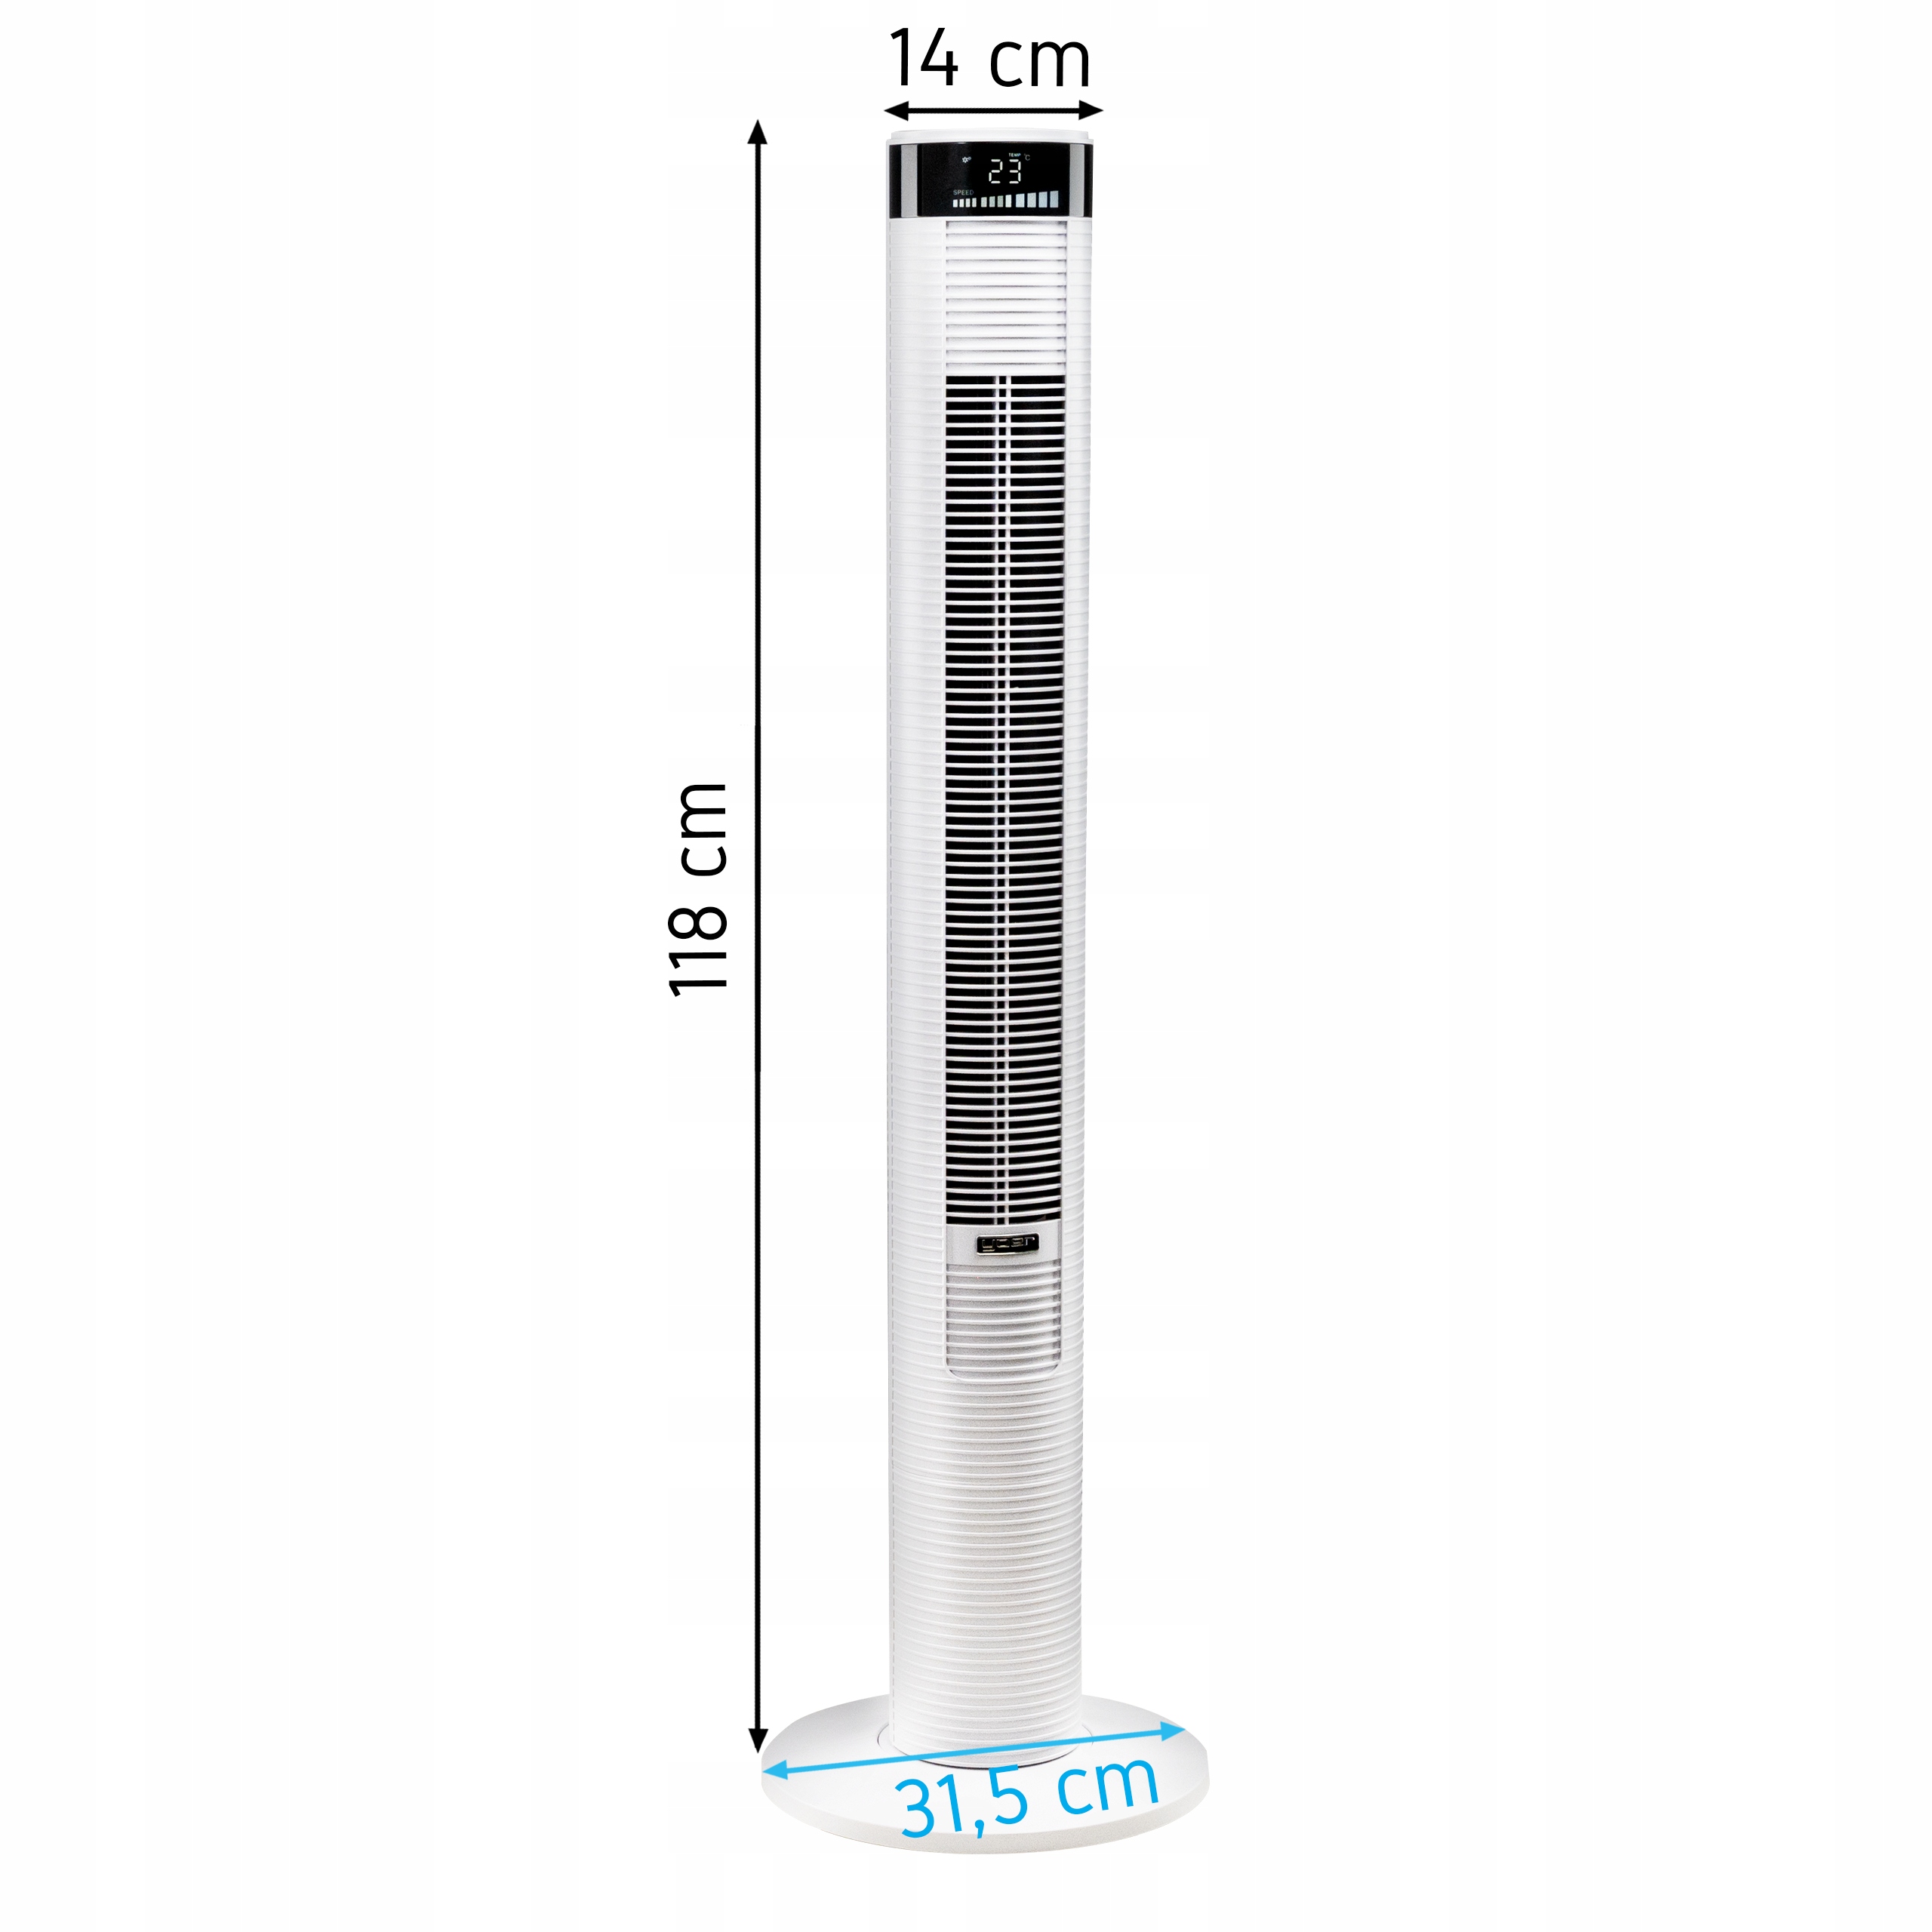 Vaikne kolonn FAN YOER + ionisatsioon + pult Kogu laius 14 cm